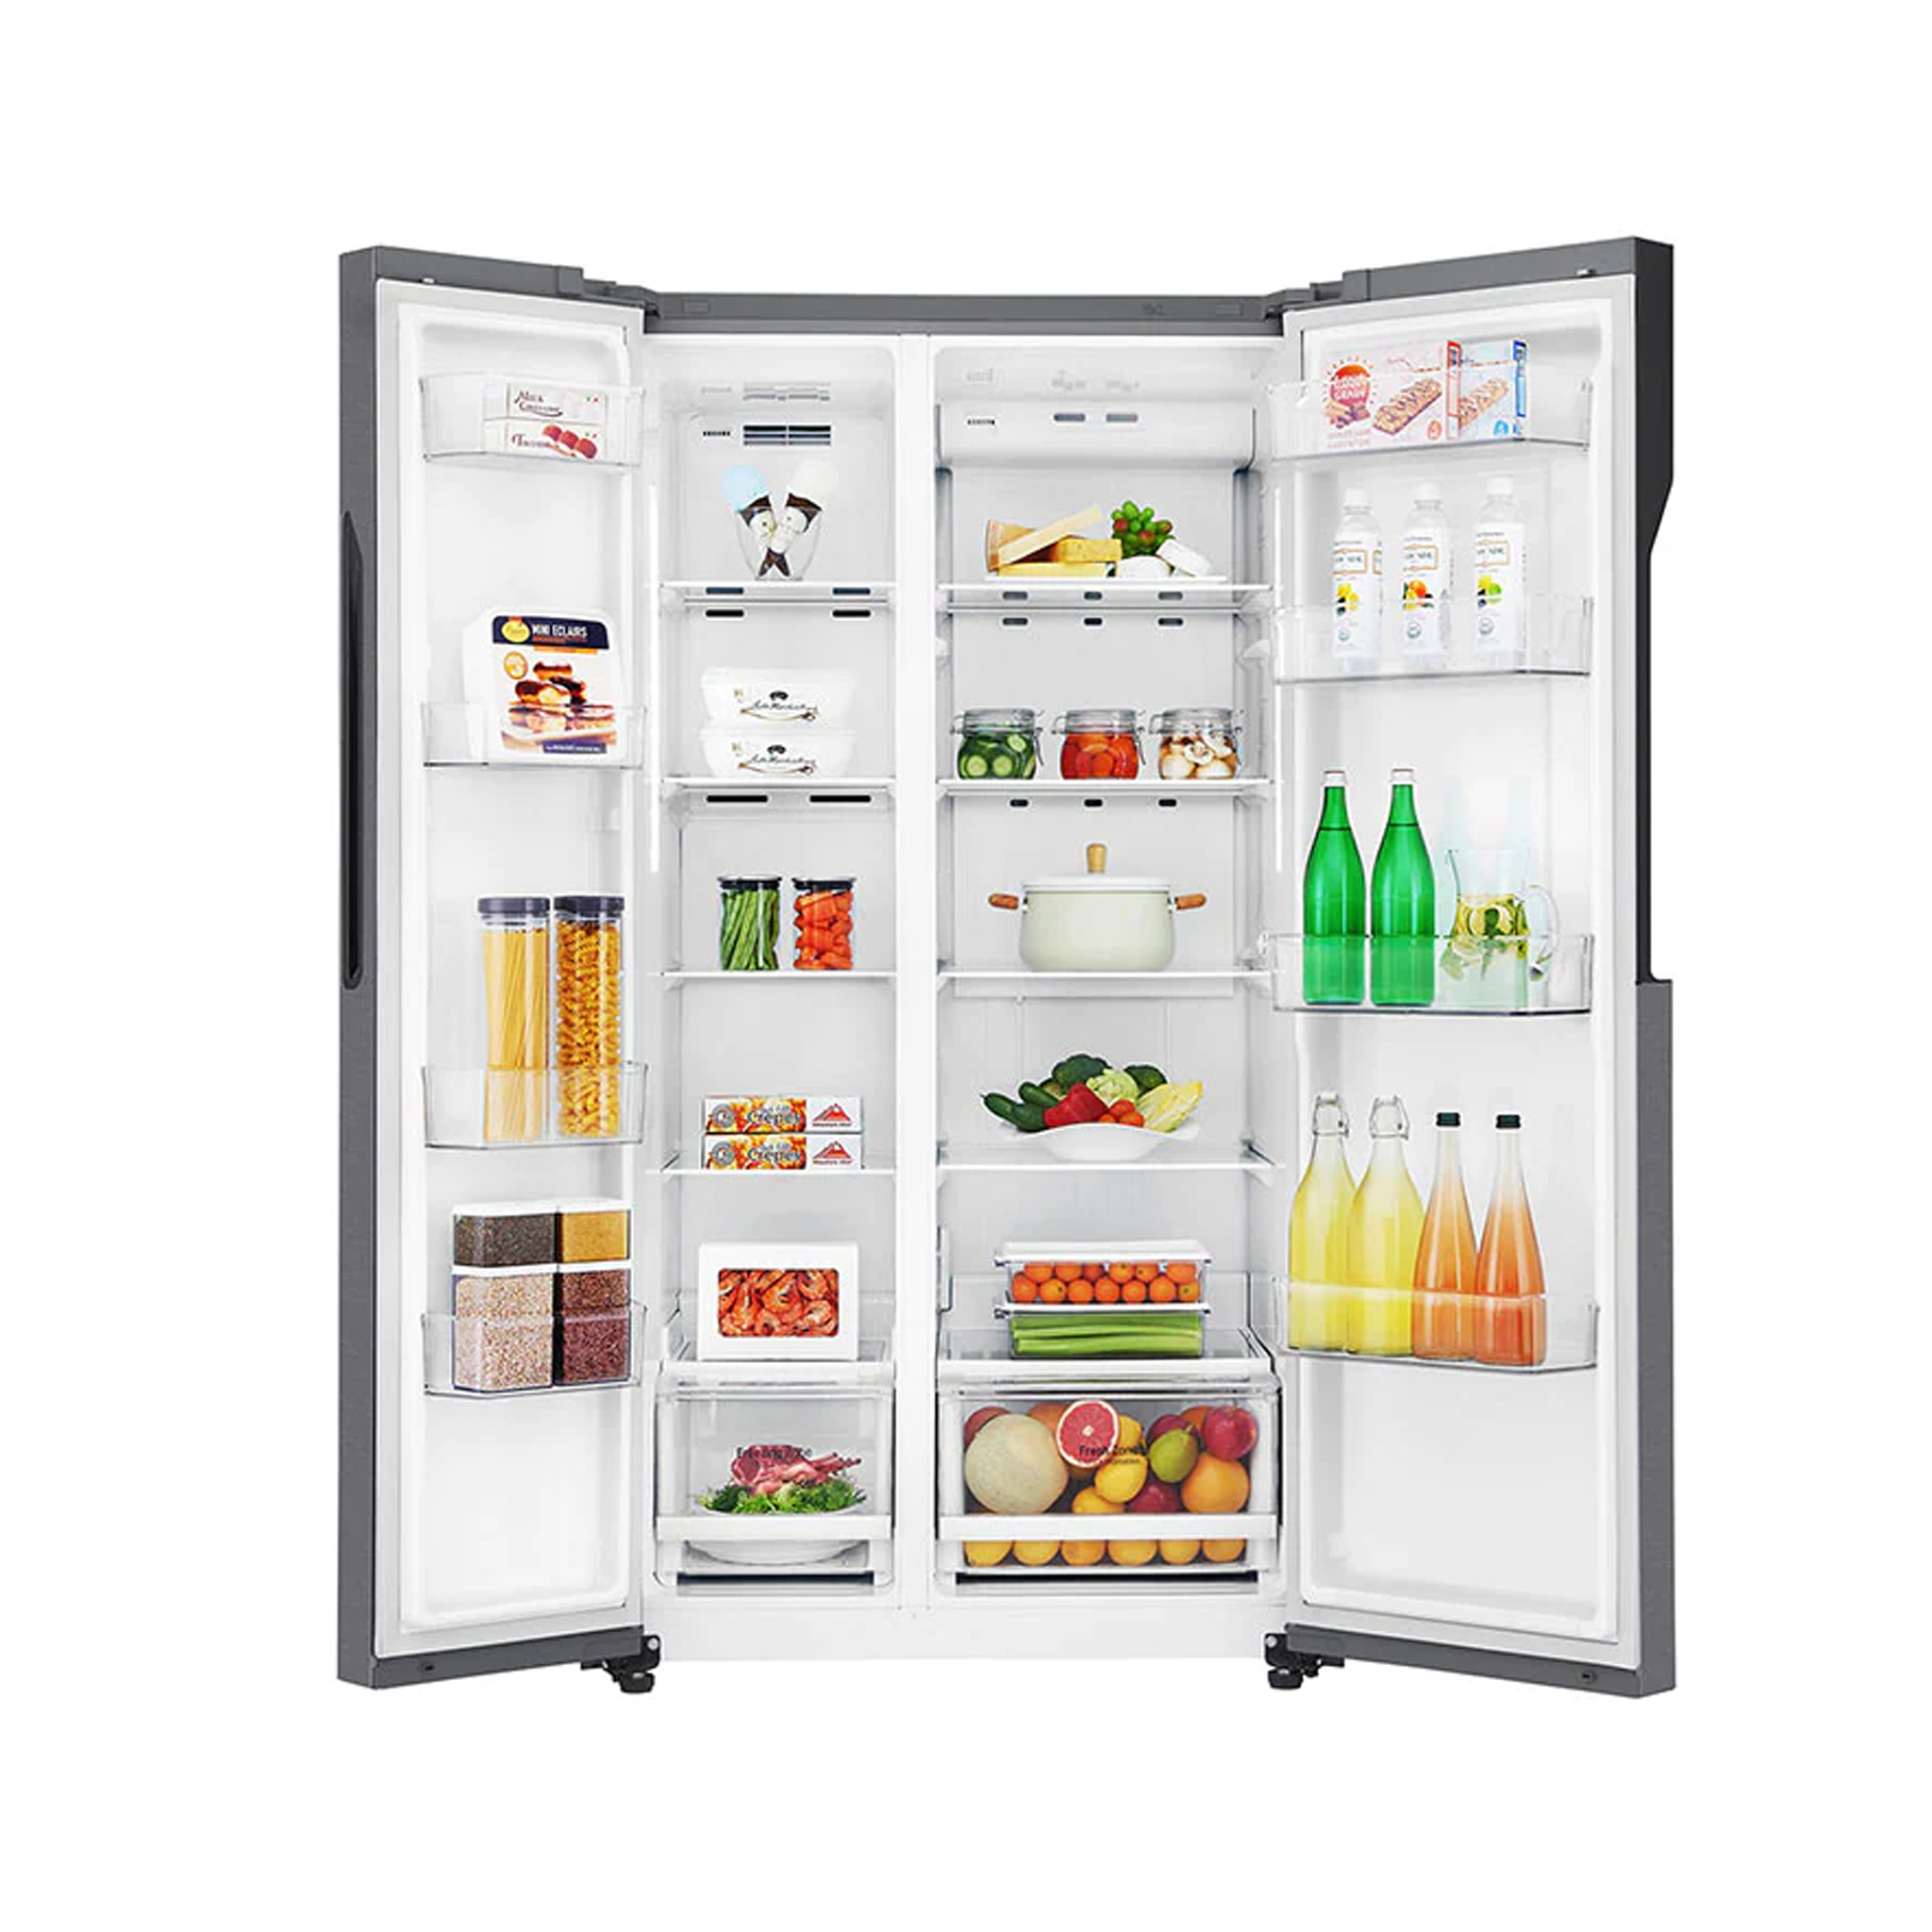 LG Refrigerator GC-B247KQDV.Adsreef